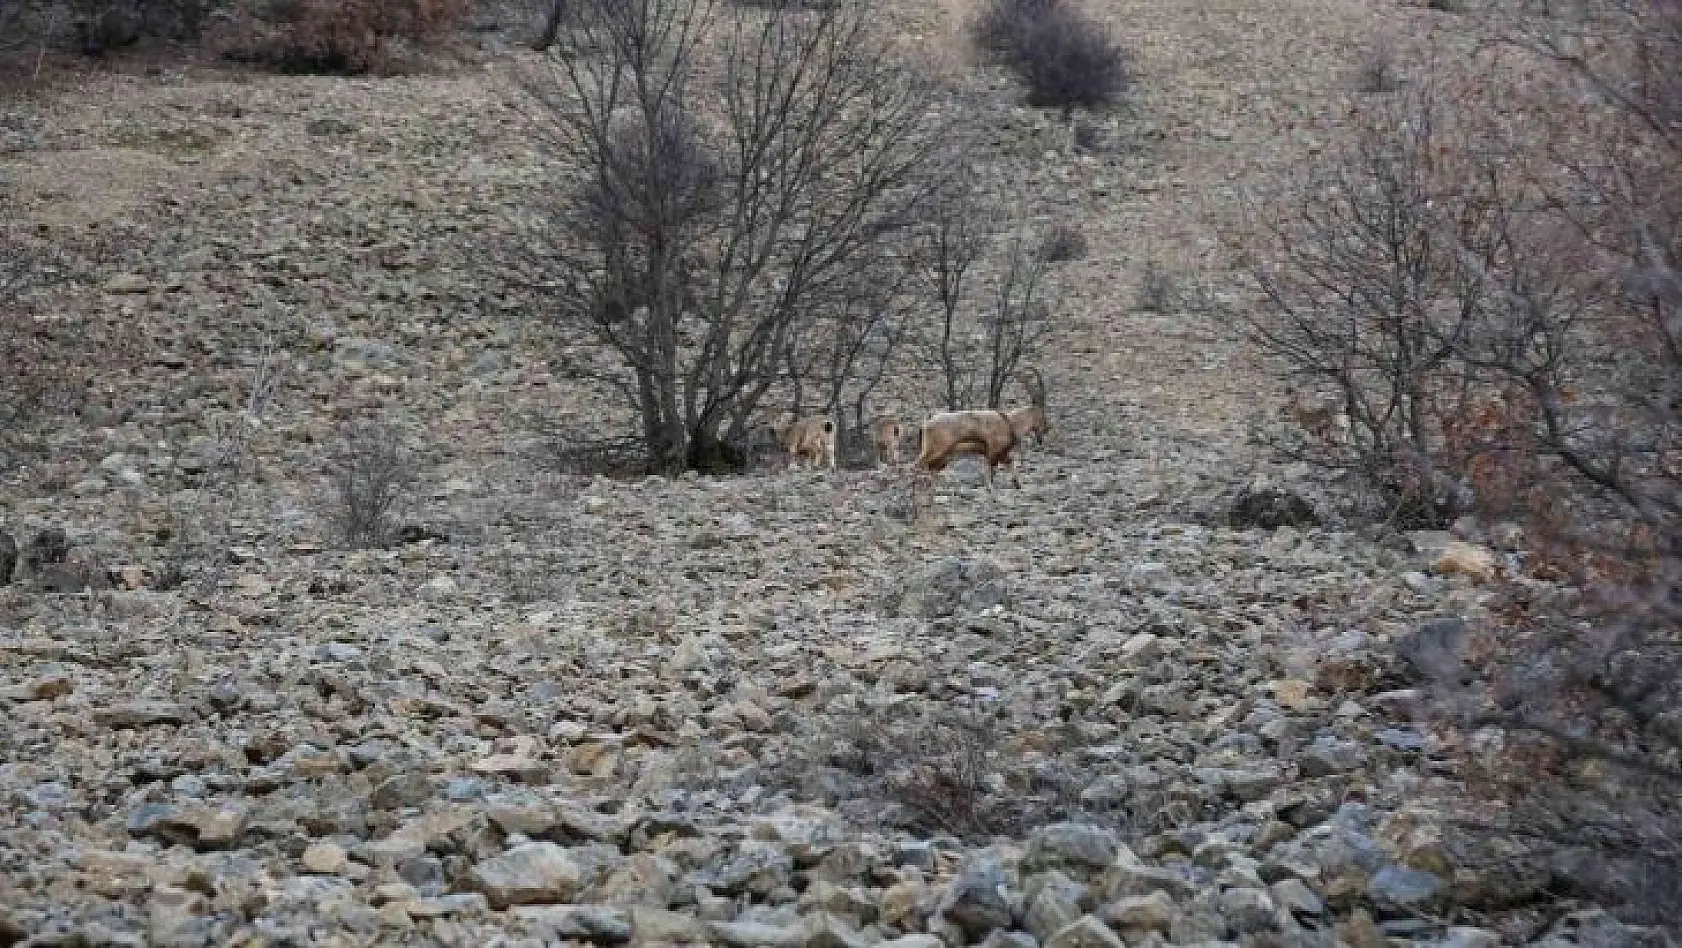 Yaban keçileri ilk kez bu kadar yakından görüntülendi